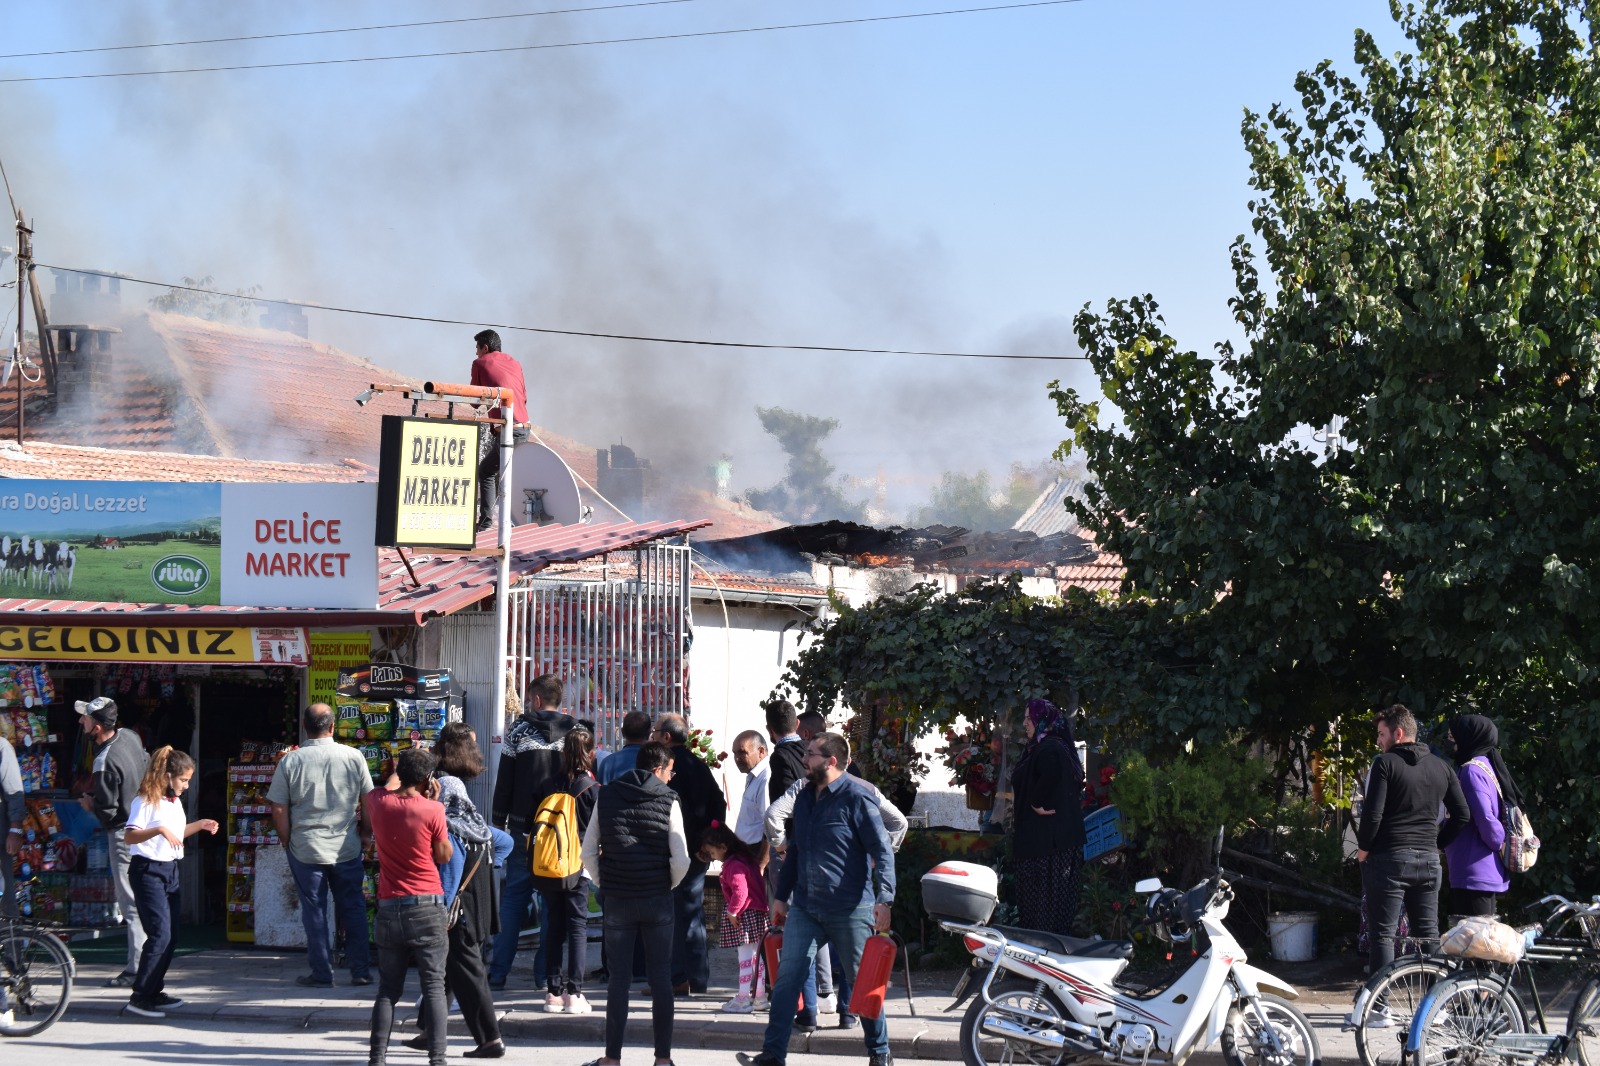 Konya'da yangın paniği